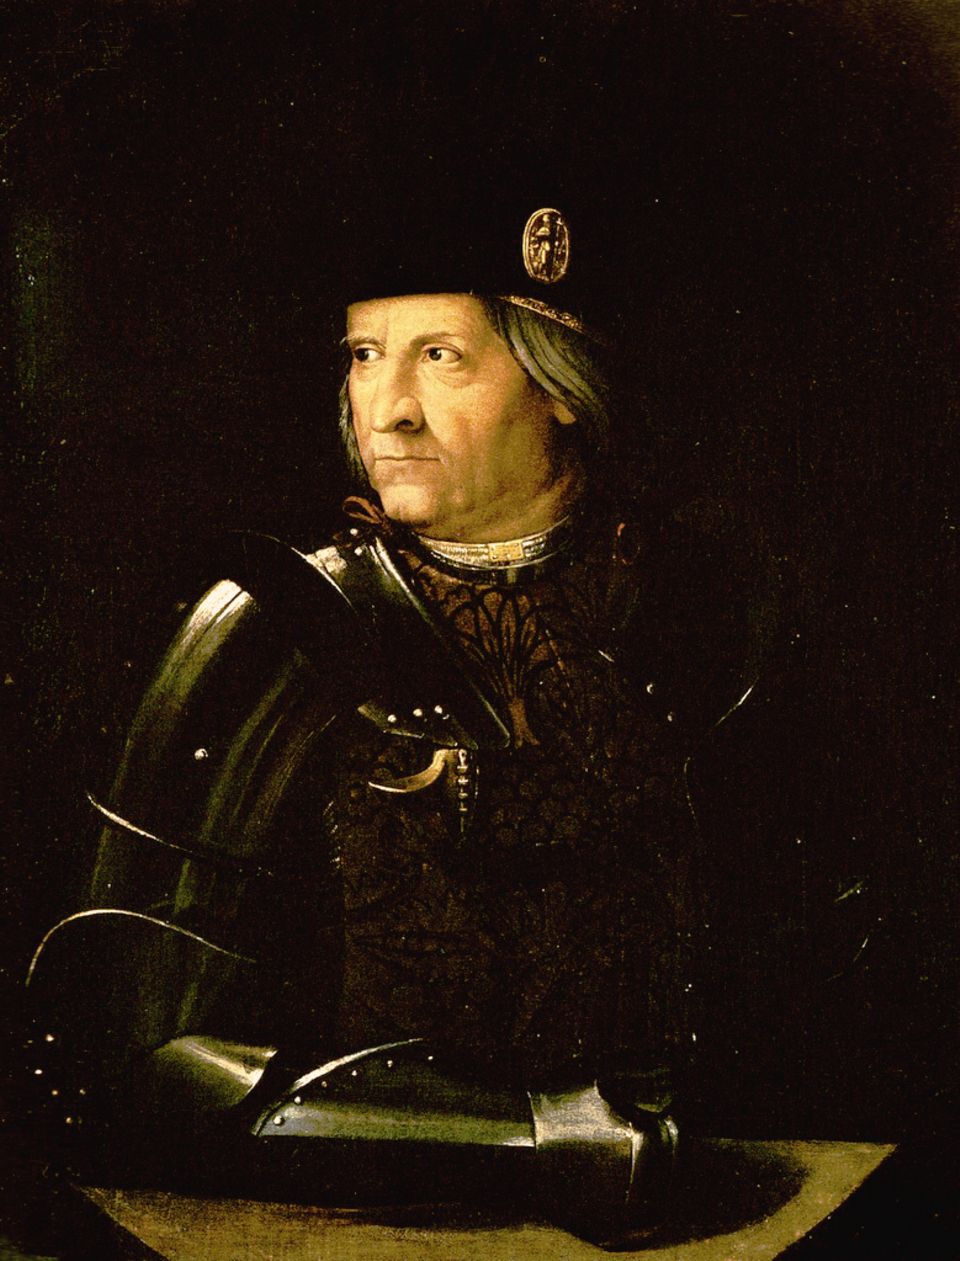 Ercole d’Este (1431–1505), der Herzog des kleinen italienischen Stadtstaates Ferrara, verfolgte mit Leidenschaft die nautischen Neuigkeiten und Entdeckungen. Notfalls auch per Auftragsdiebstahl auf fremdem Territorium.